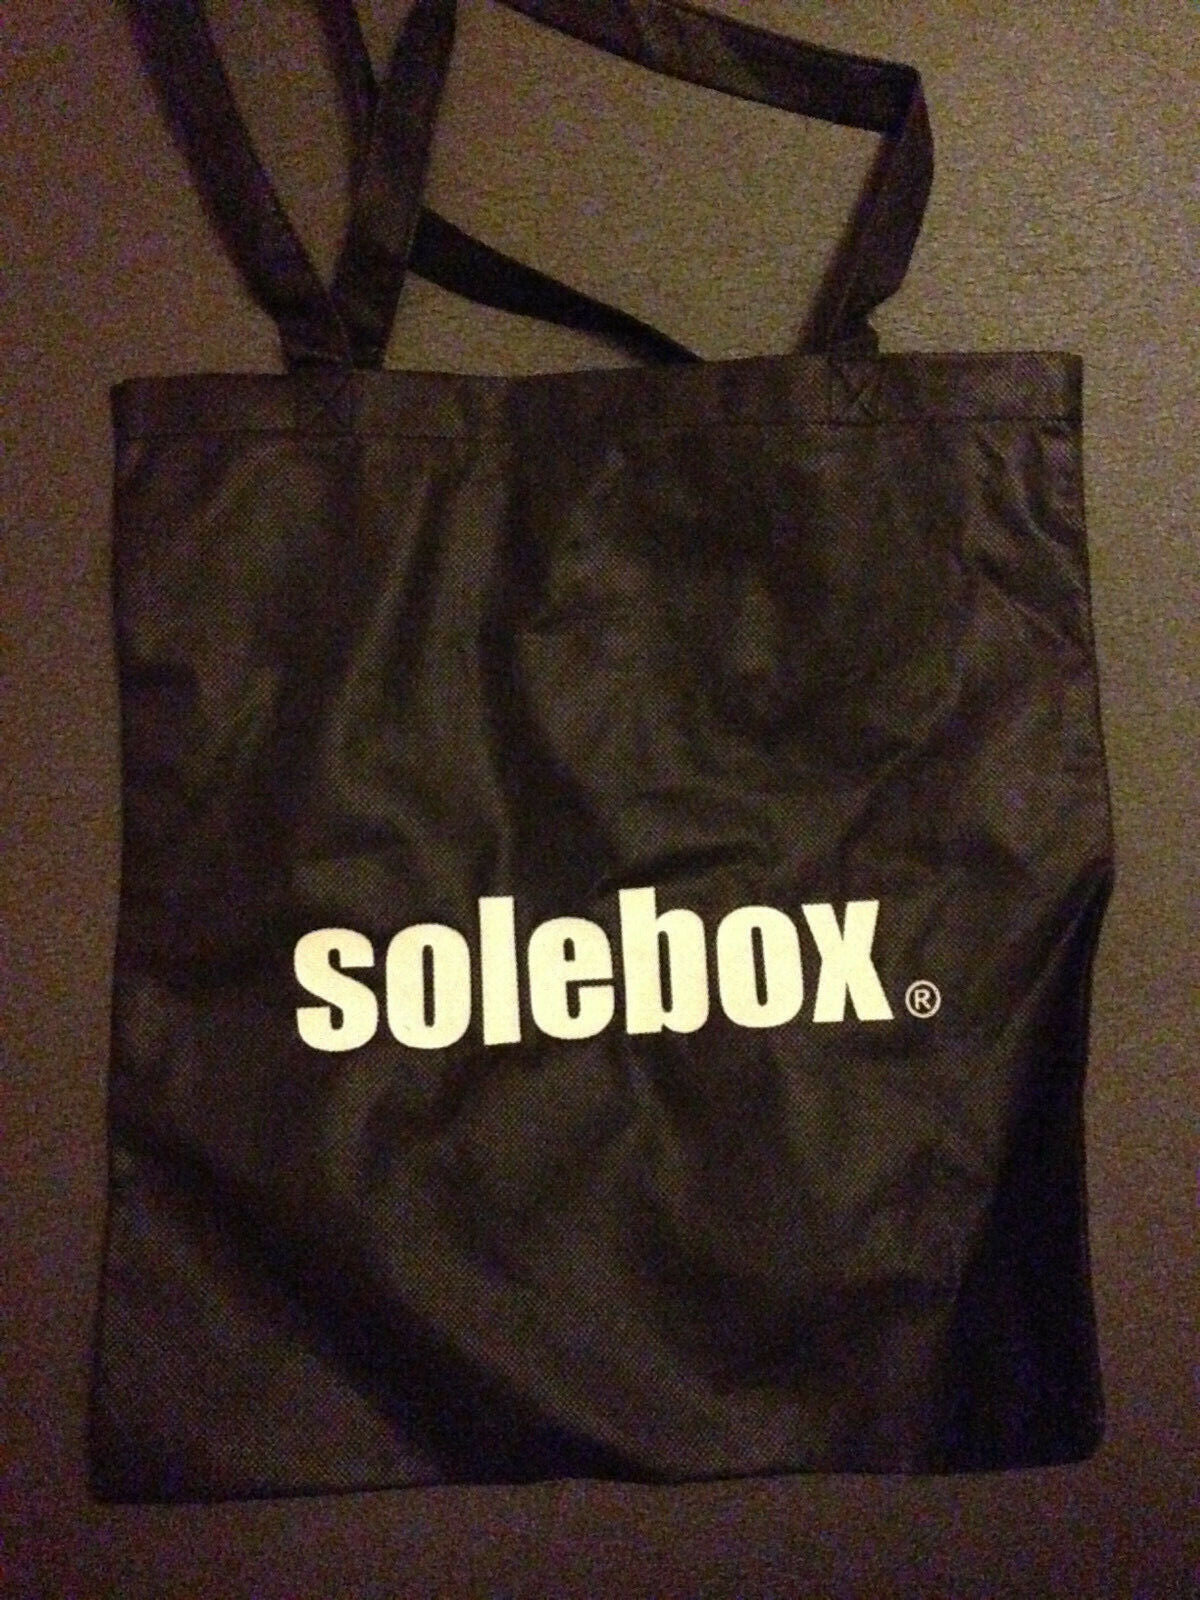 Solebox Tasche Beutel bag ca. 37 x 40 cm GLOW IN THE DARK selten rare